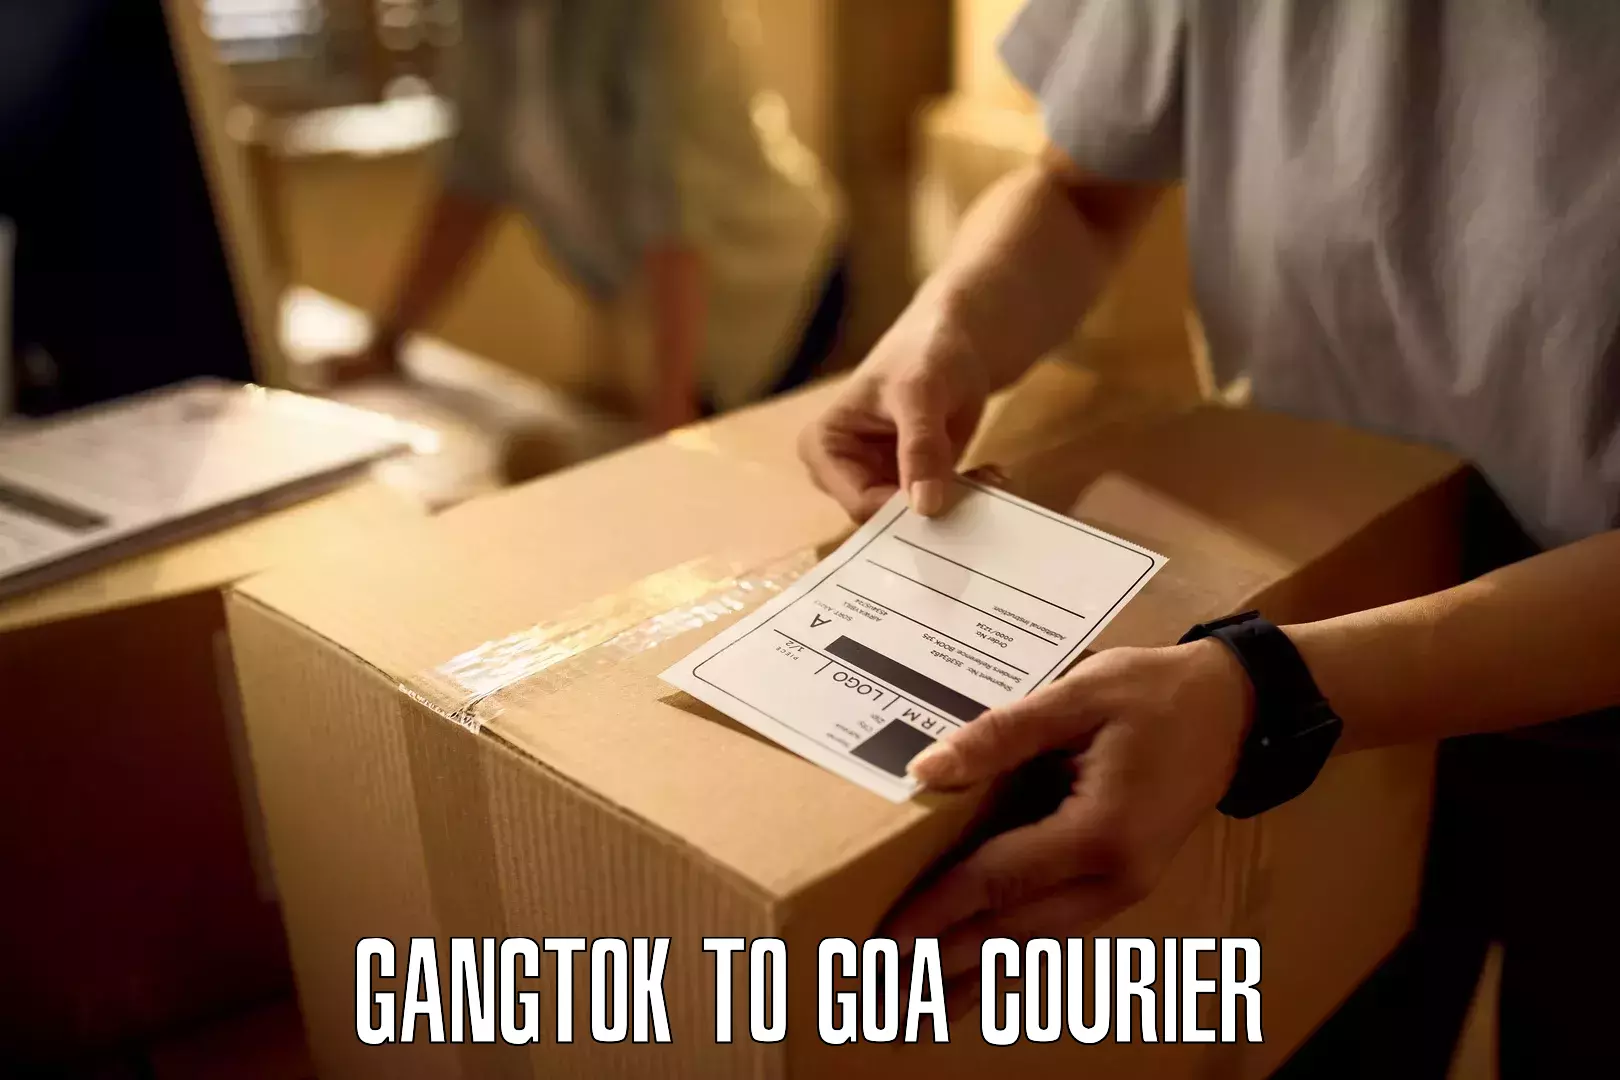 State-of-the-art courier technology Gangtok to Vasco da Gama